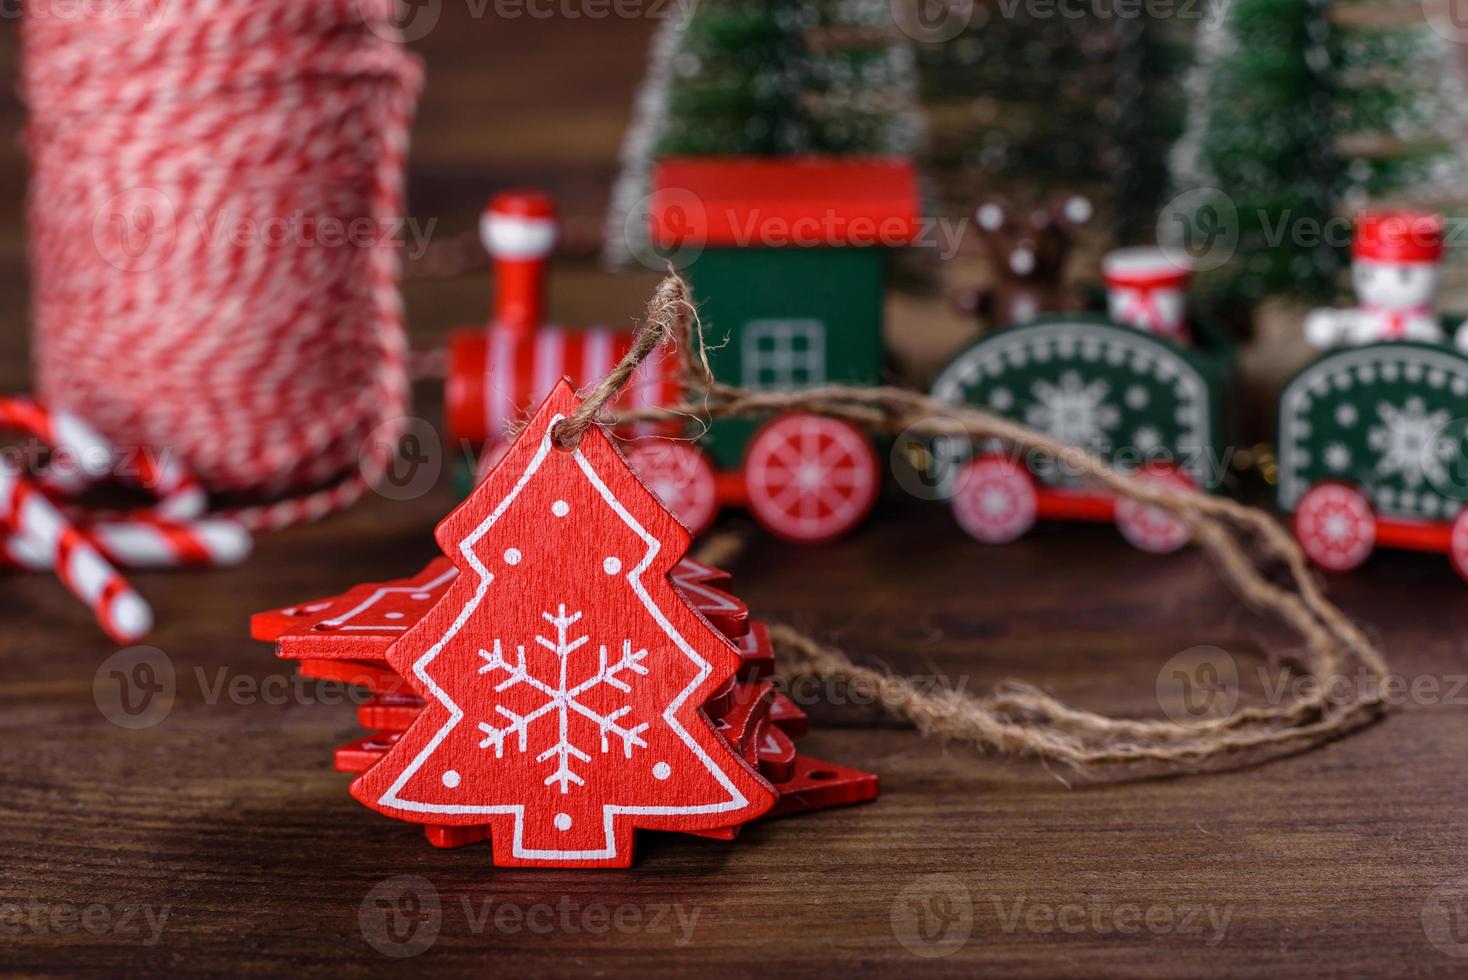 elementi natalizi di decorazioni per decorare l'albero di capodanno foto